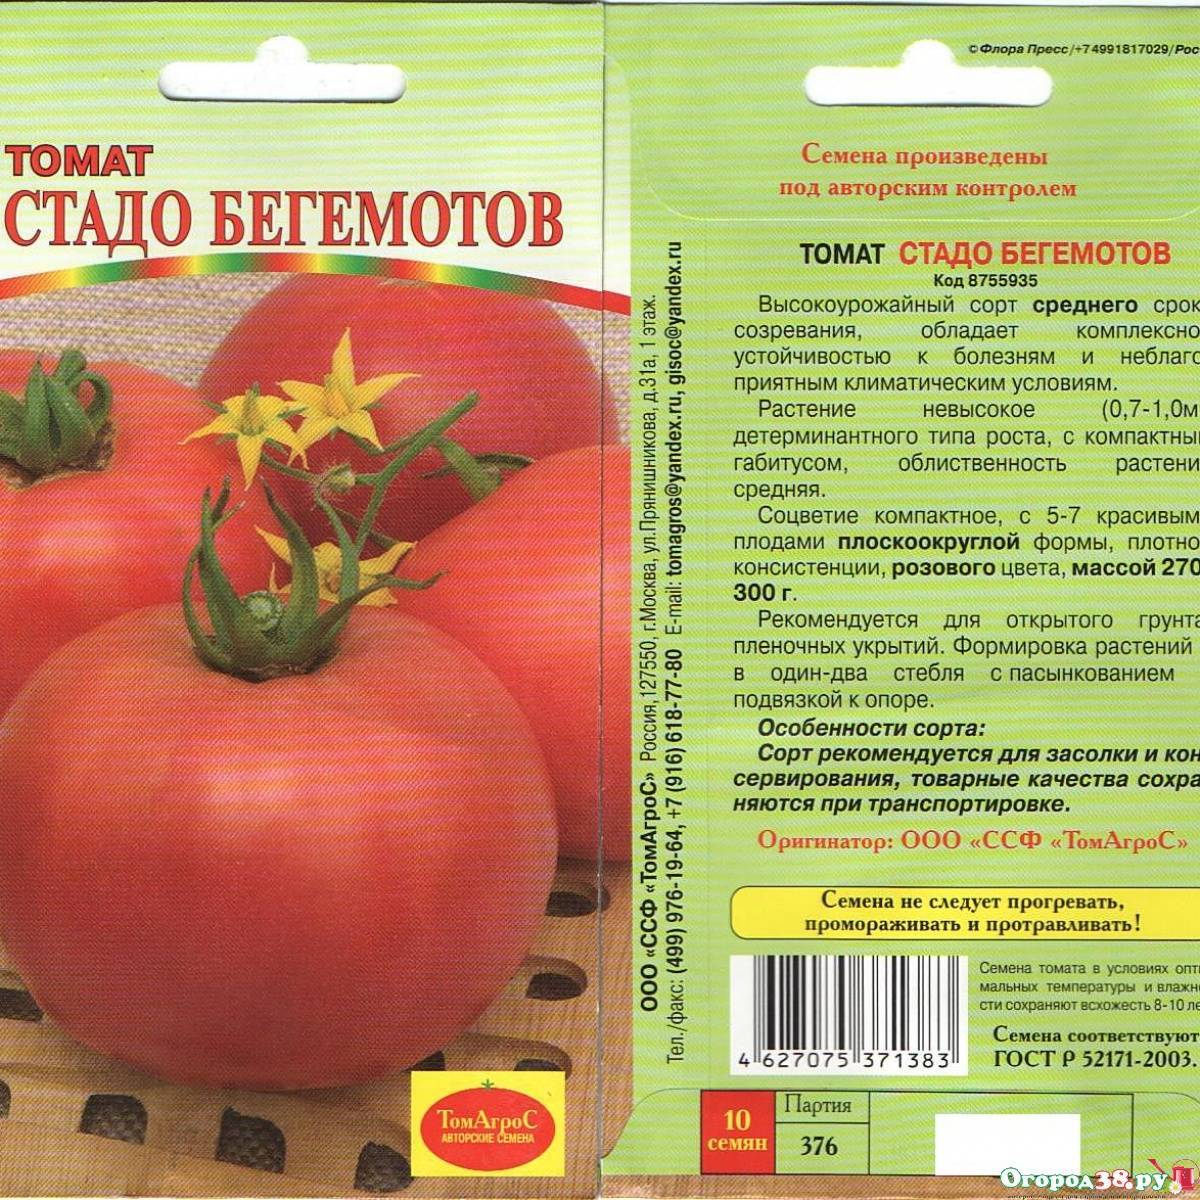 Томат гаванская сигара отзывы, низкорослые сорта помидор для теплиц